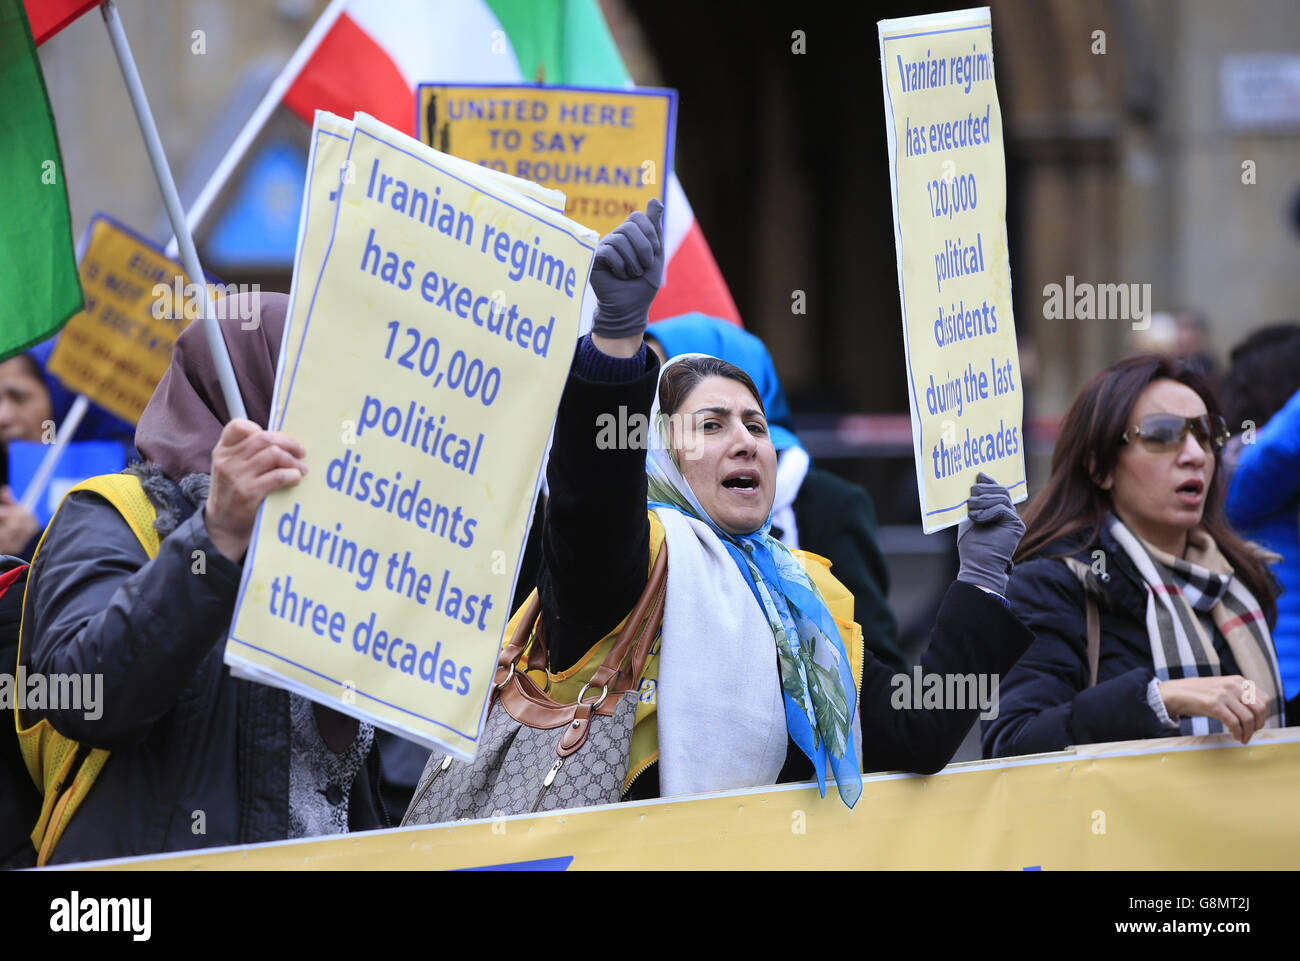 Des membres de la communauté anglo-iranienne protestent contre le régime iranien alors que le ministre iranien des Affaires étrangères Javad Zarif assiste à la conférence « Sporting Syria and the Region » au centre de conférence Queen Elizabeth II à Londres. Banque D'Images